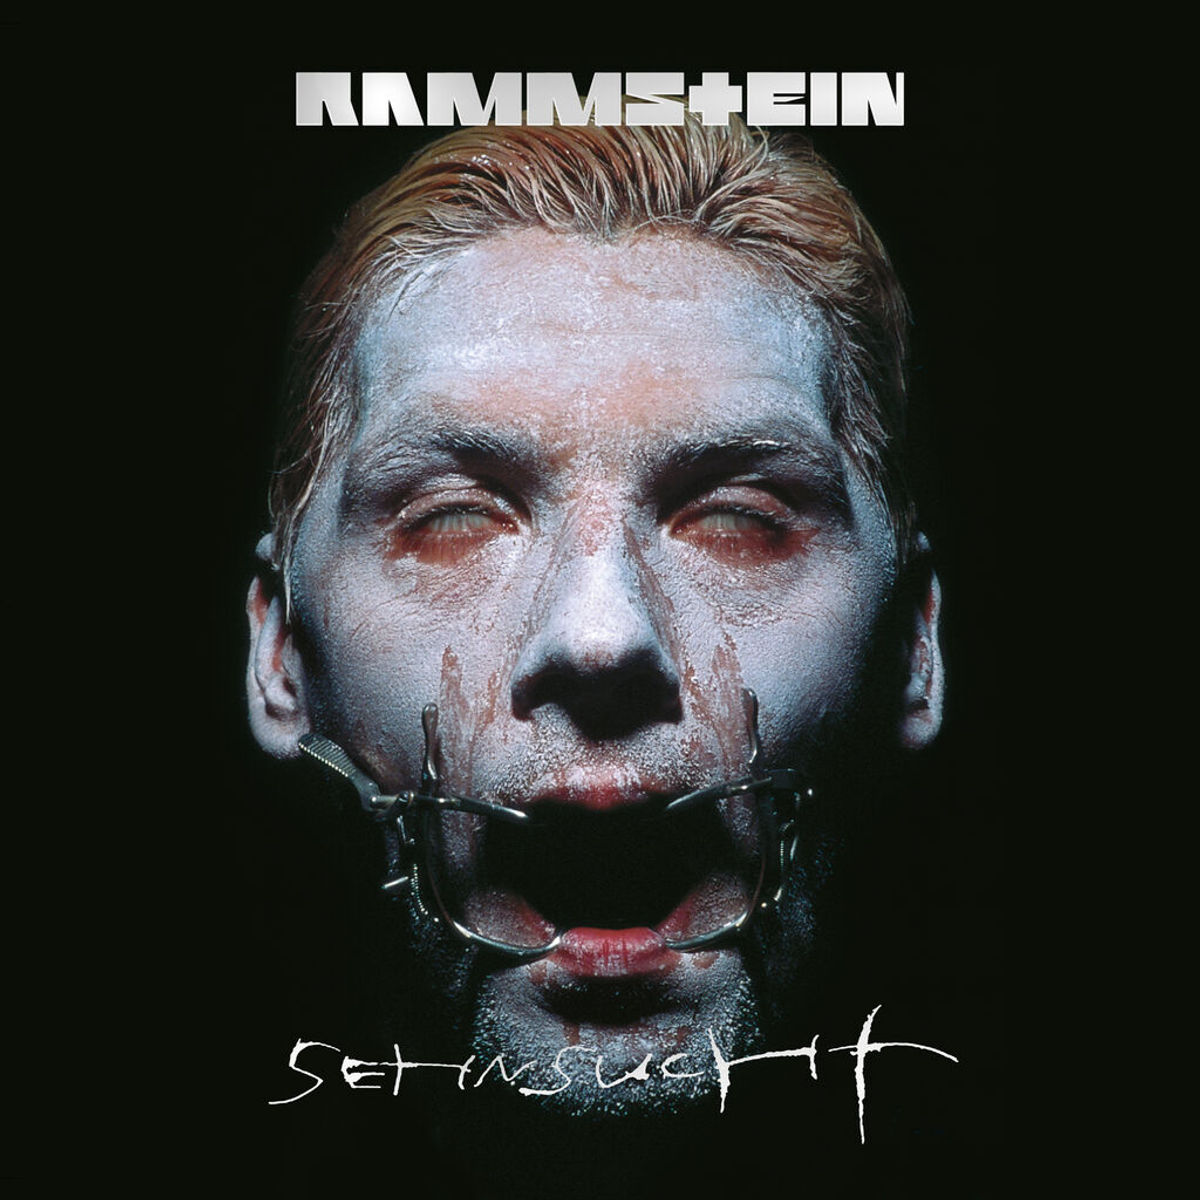 Sehnsucht - Rammstein (Album)